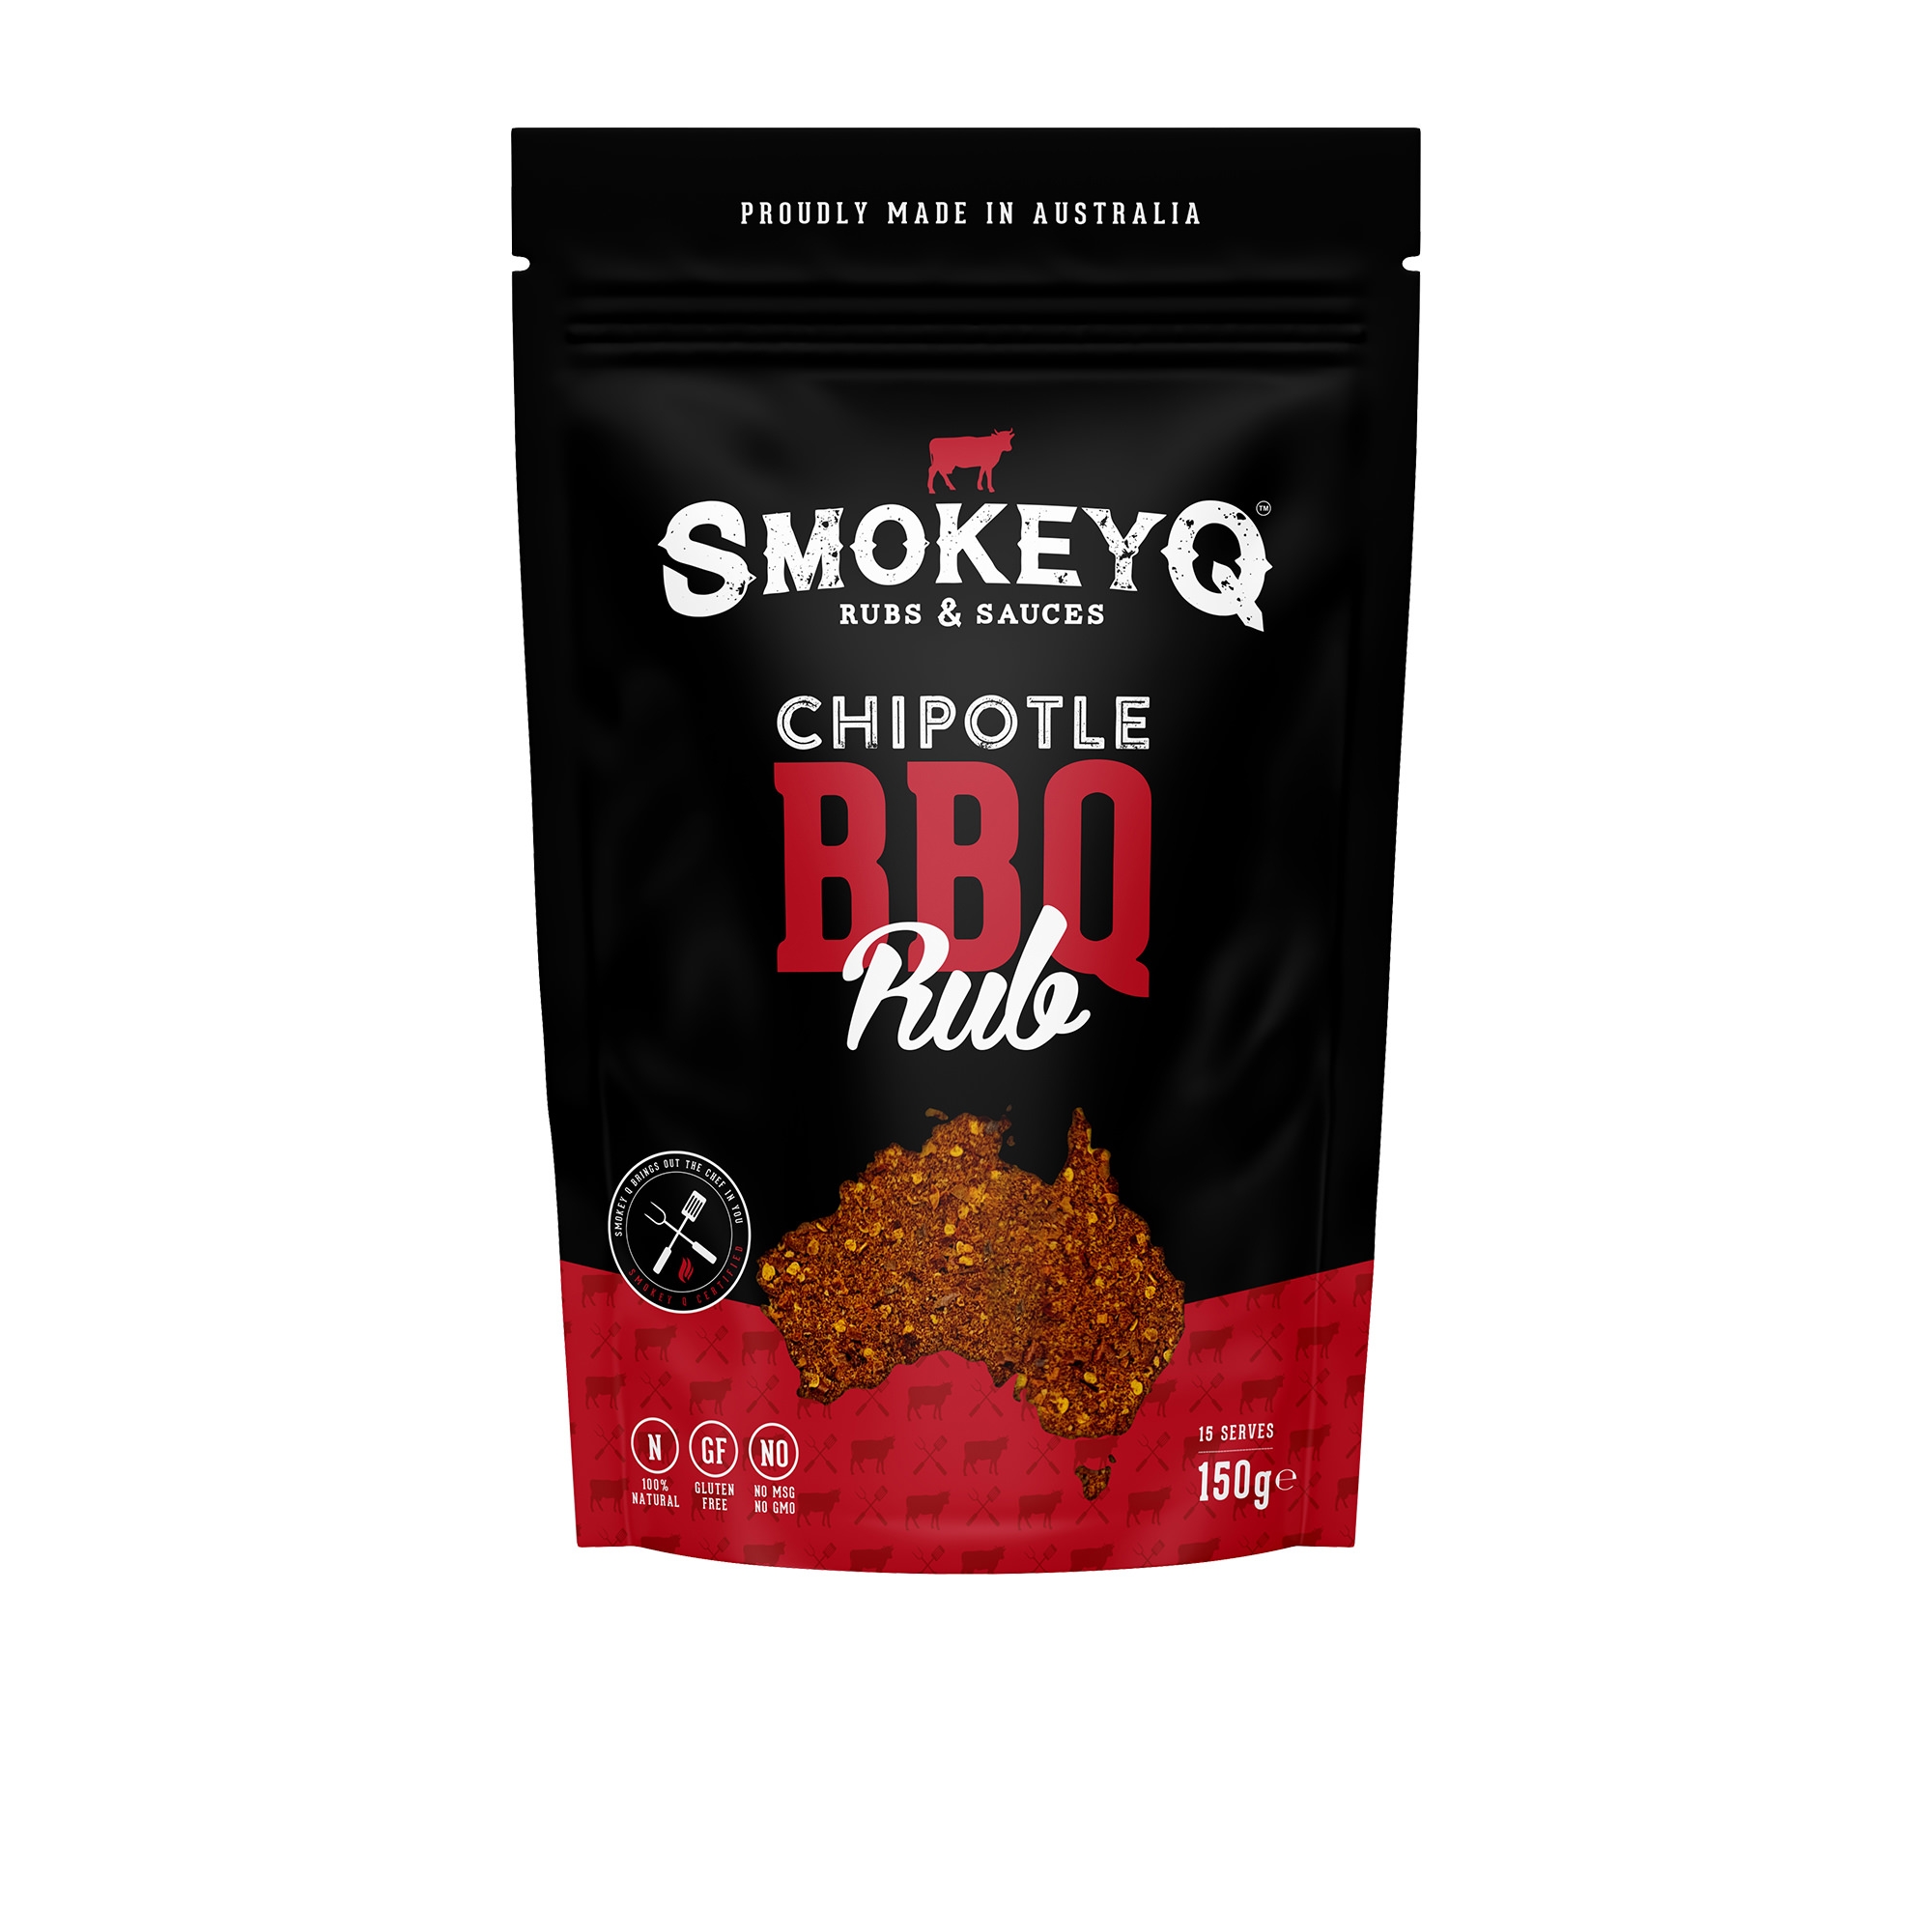 Smokey Q Chipotle Spicy Rub 150g Image 1